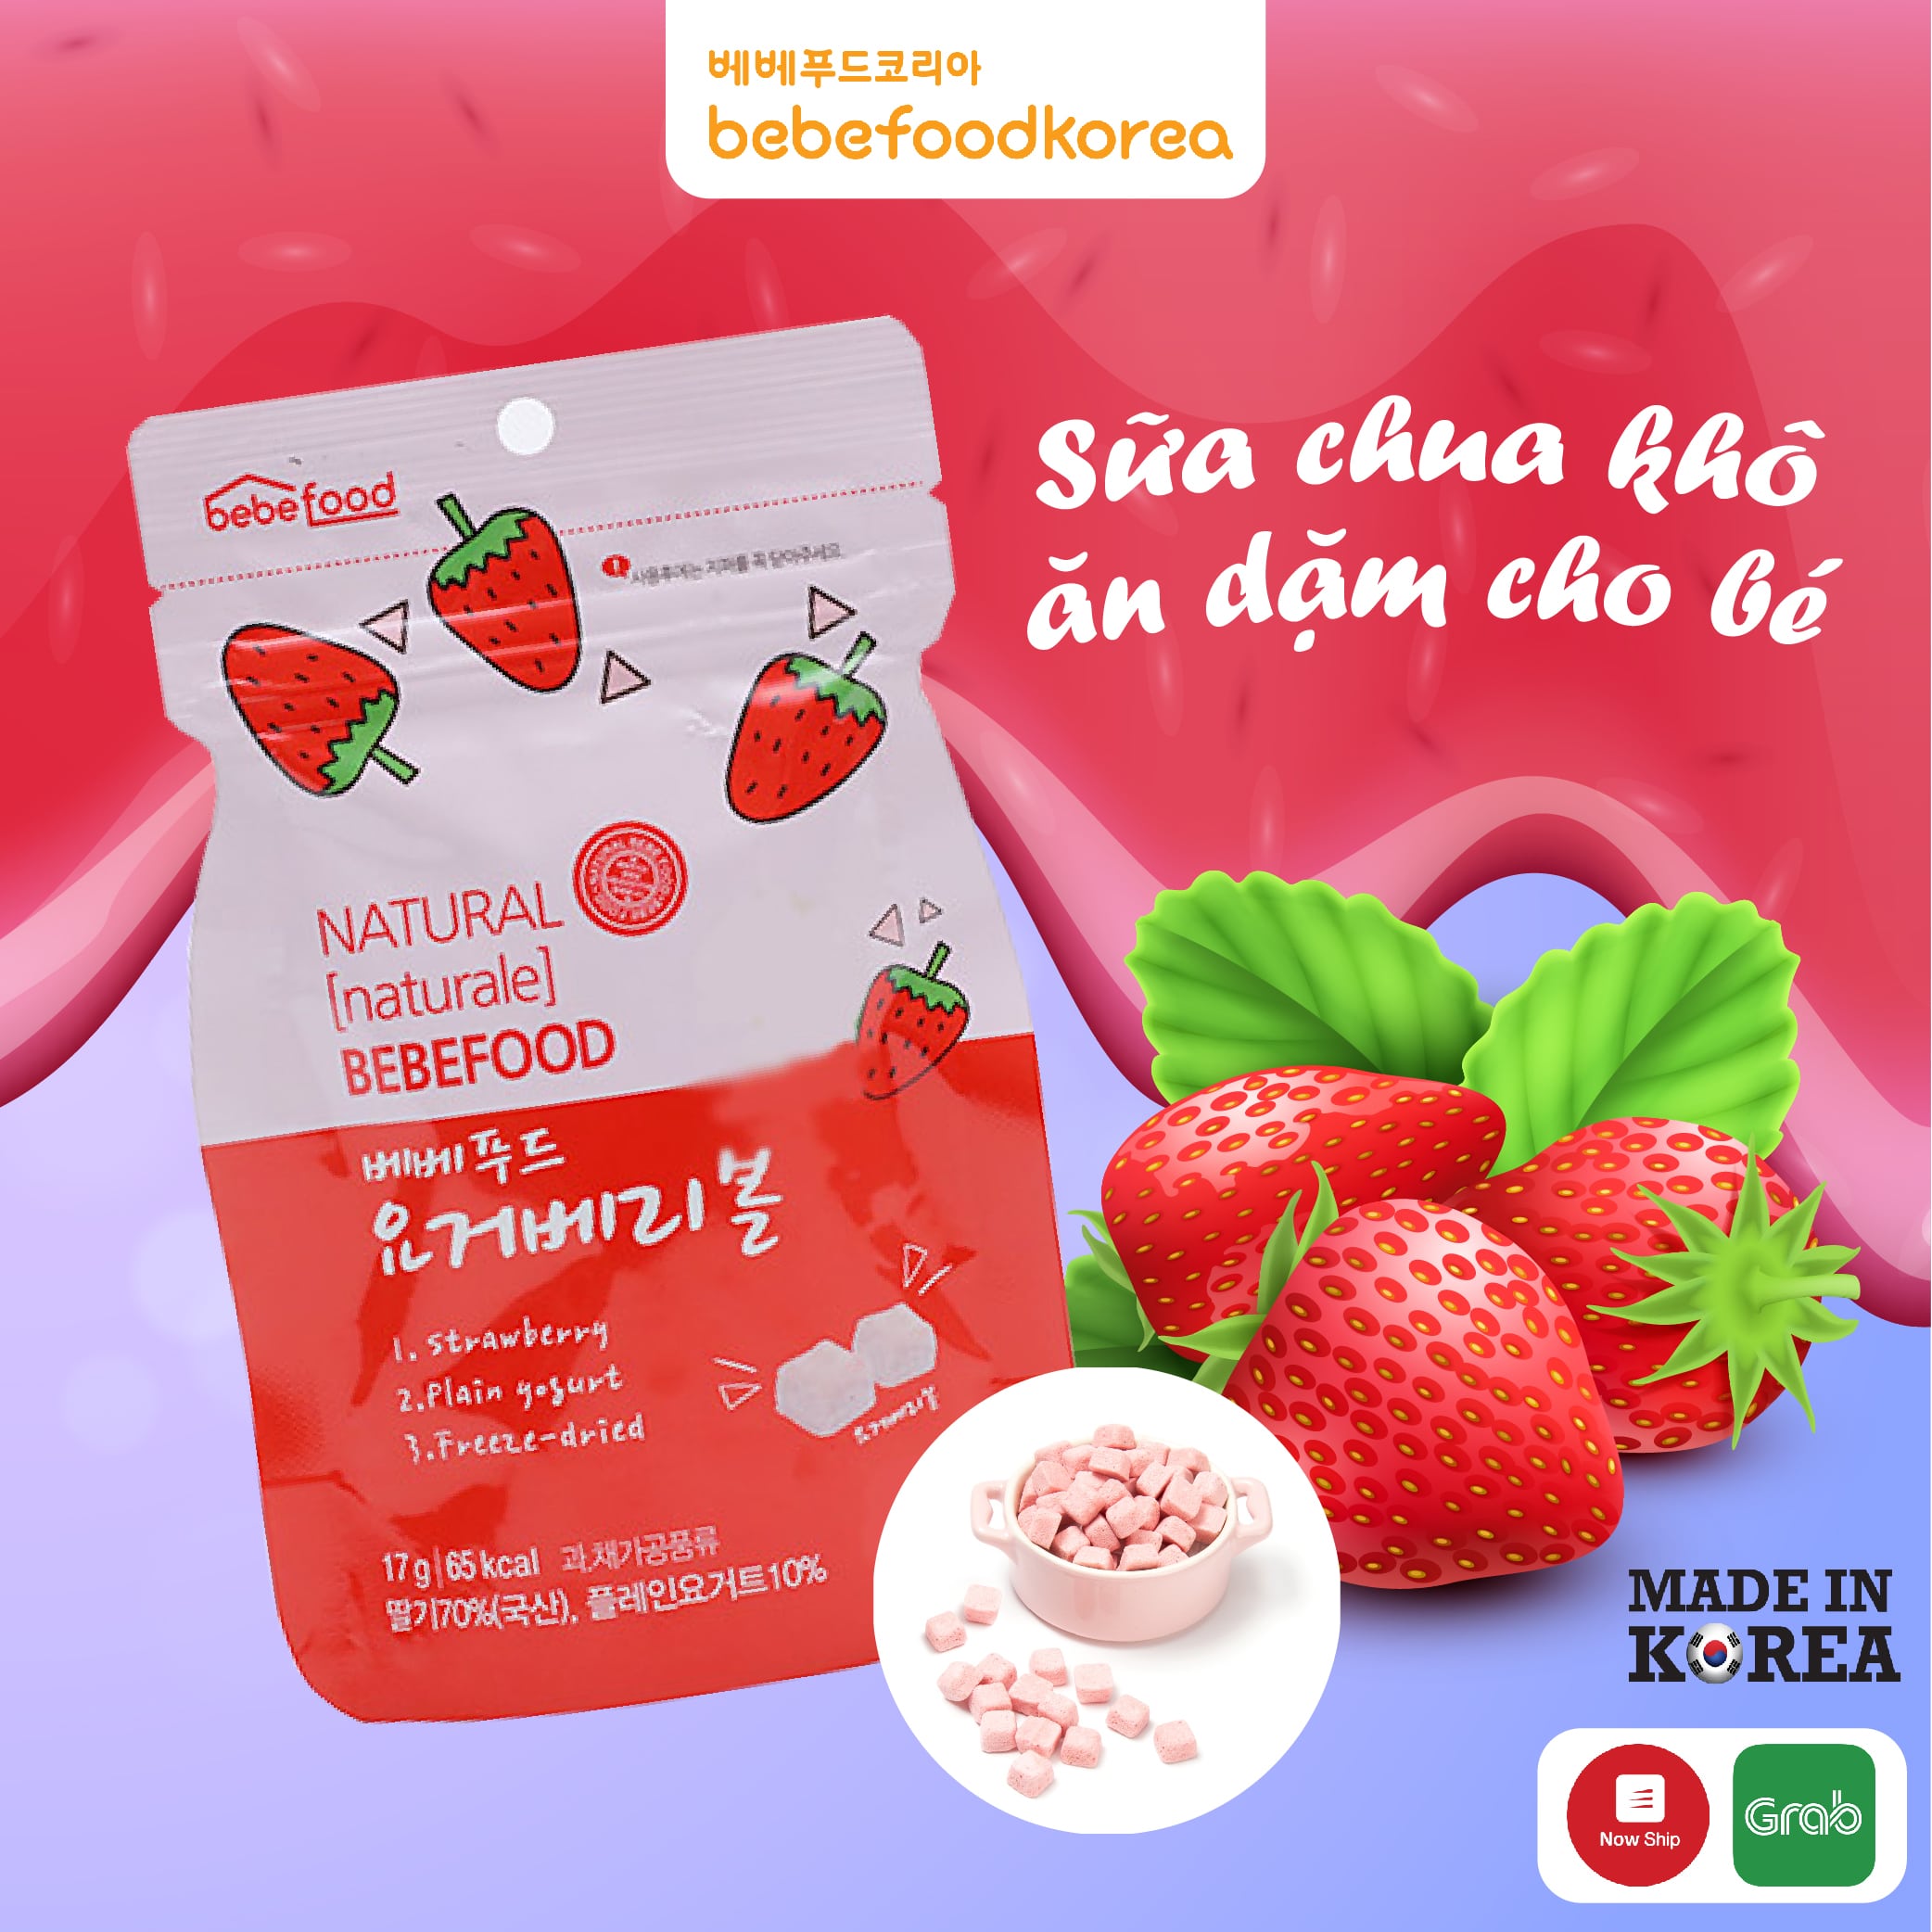 Sữa chua khô hữu cơ ăn dặm cho bé Bebefood Hàn Quốc 1